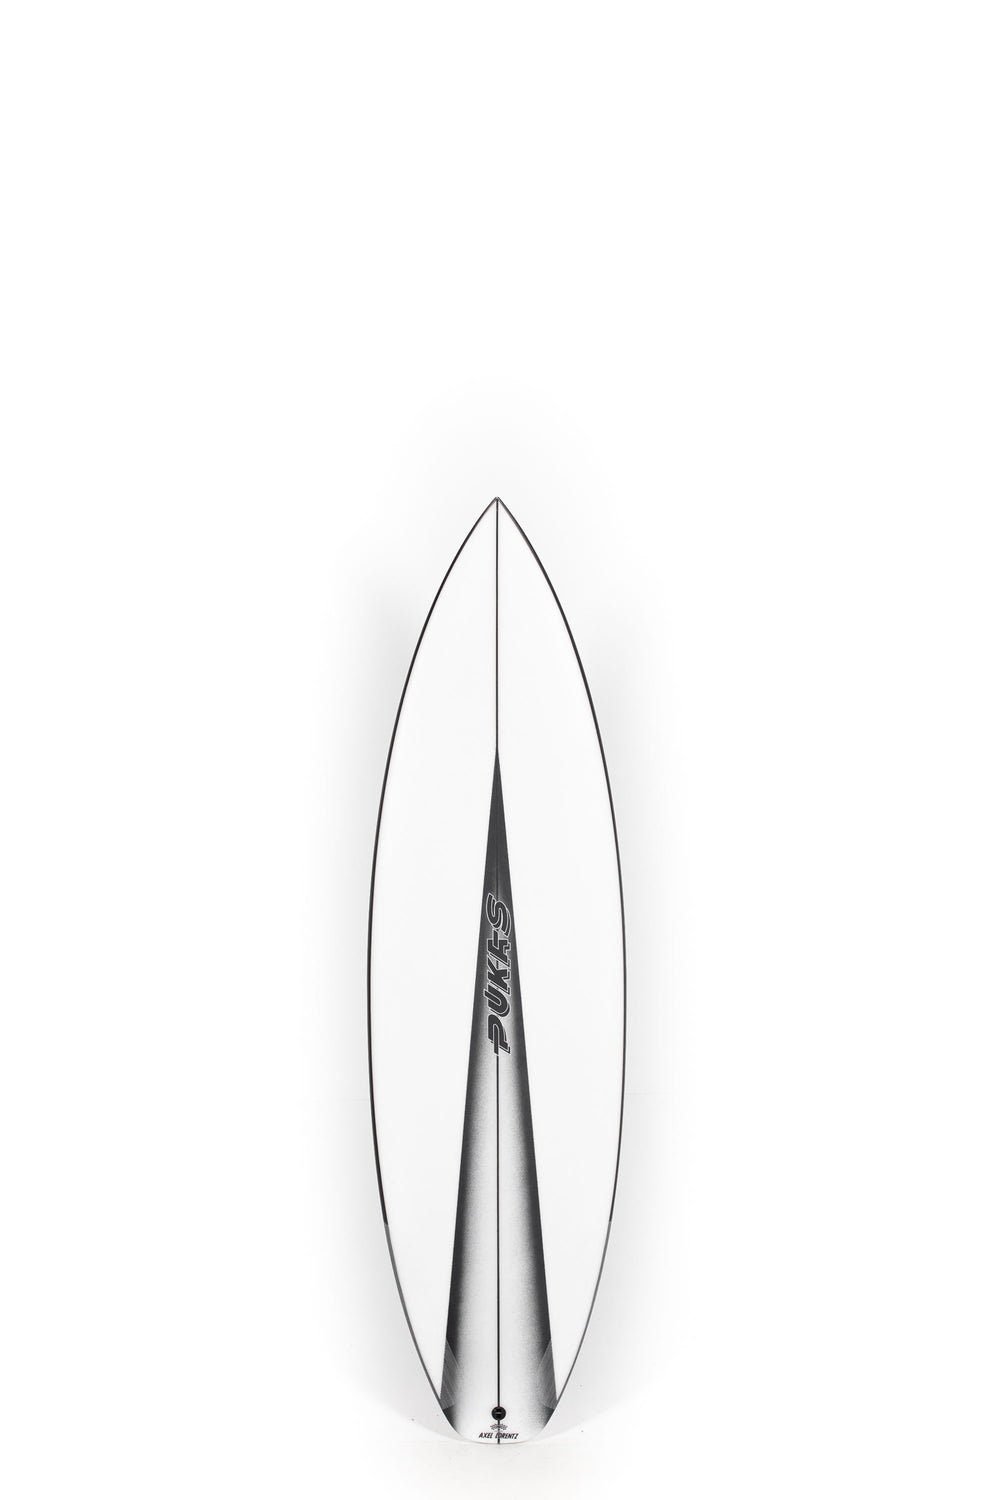 Pukas Surf Shop - Pukas Surfboard - DARKER by Axel Lorentz - 5'9